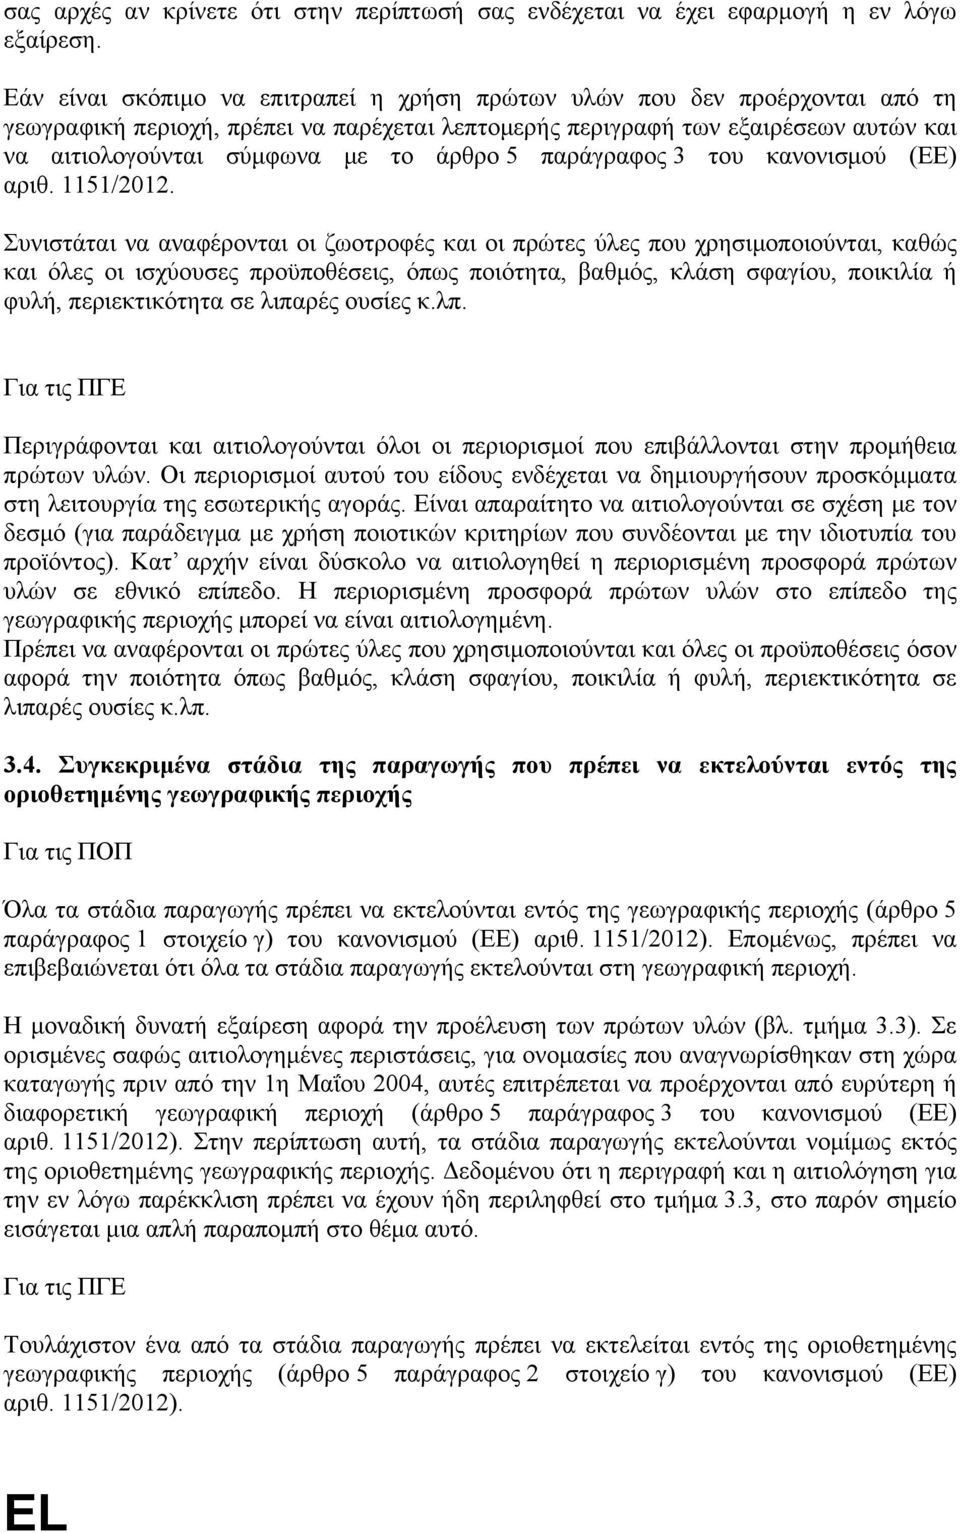 άρθρο 5 παράγραφος 3 του κανονισμού (ΕΕ) αριθ. 1151/2012.